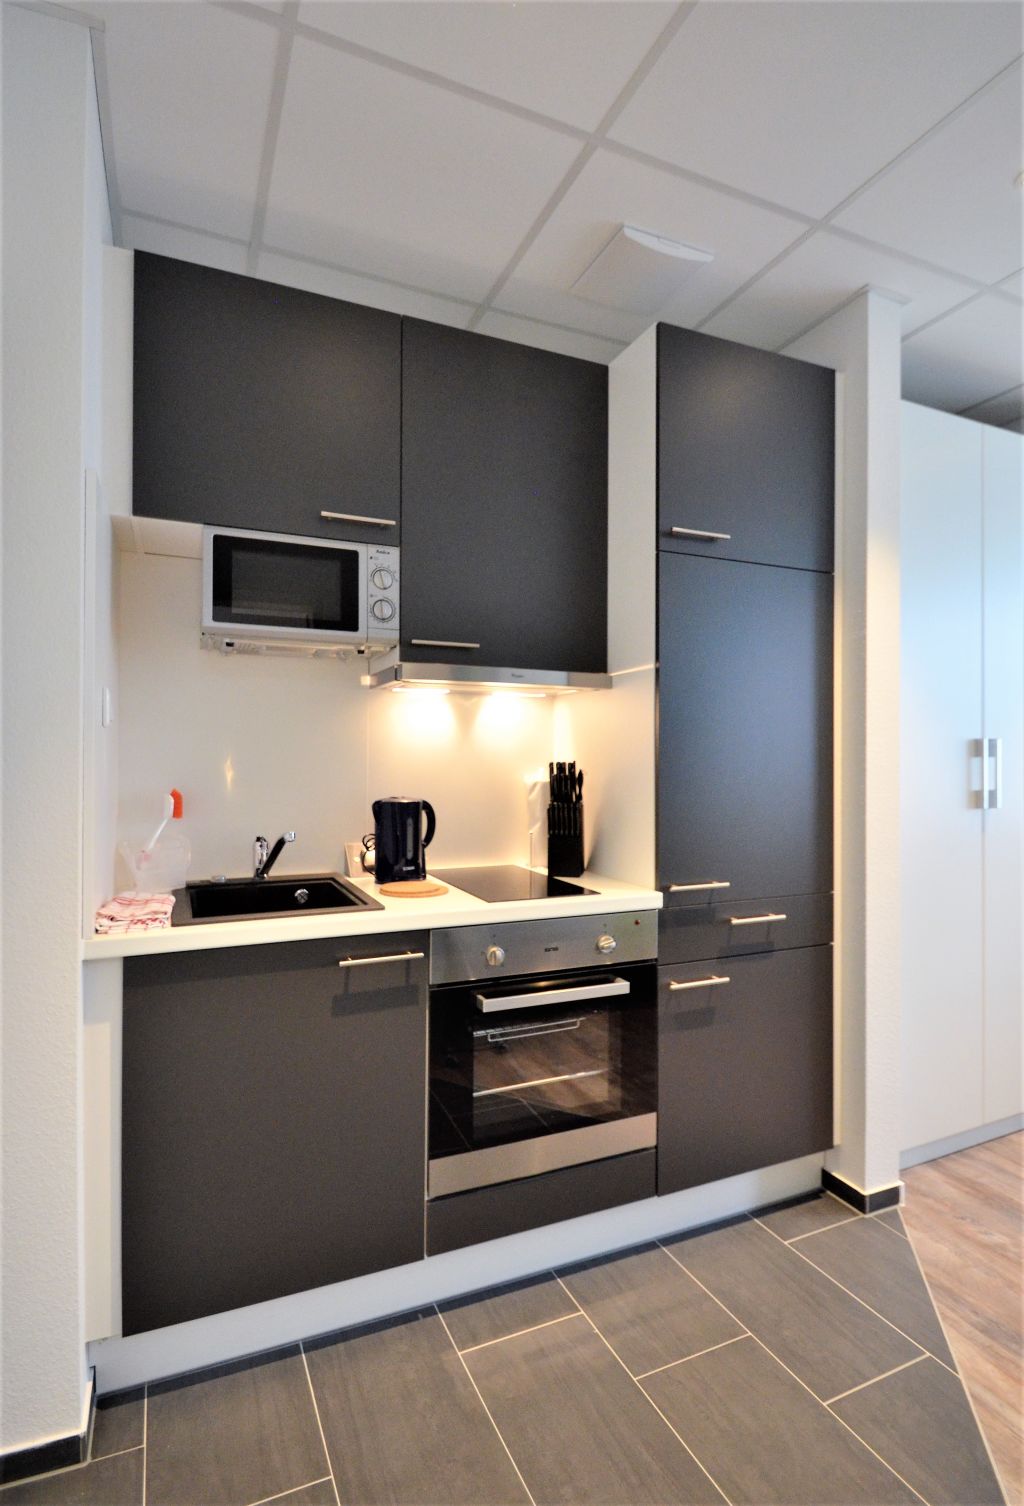 Rent 1 room apartment Frankfurt am Main | Entire place | Frankfurt am Main | Business Apartment - ab 1 Monat - vollständig ausgestattet | Hominext